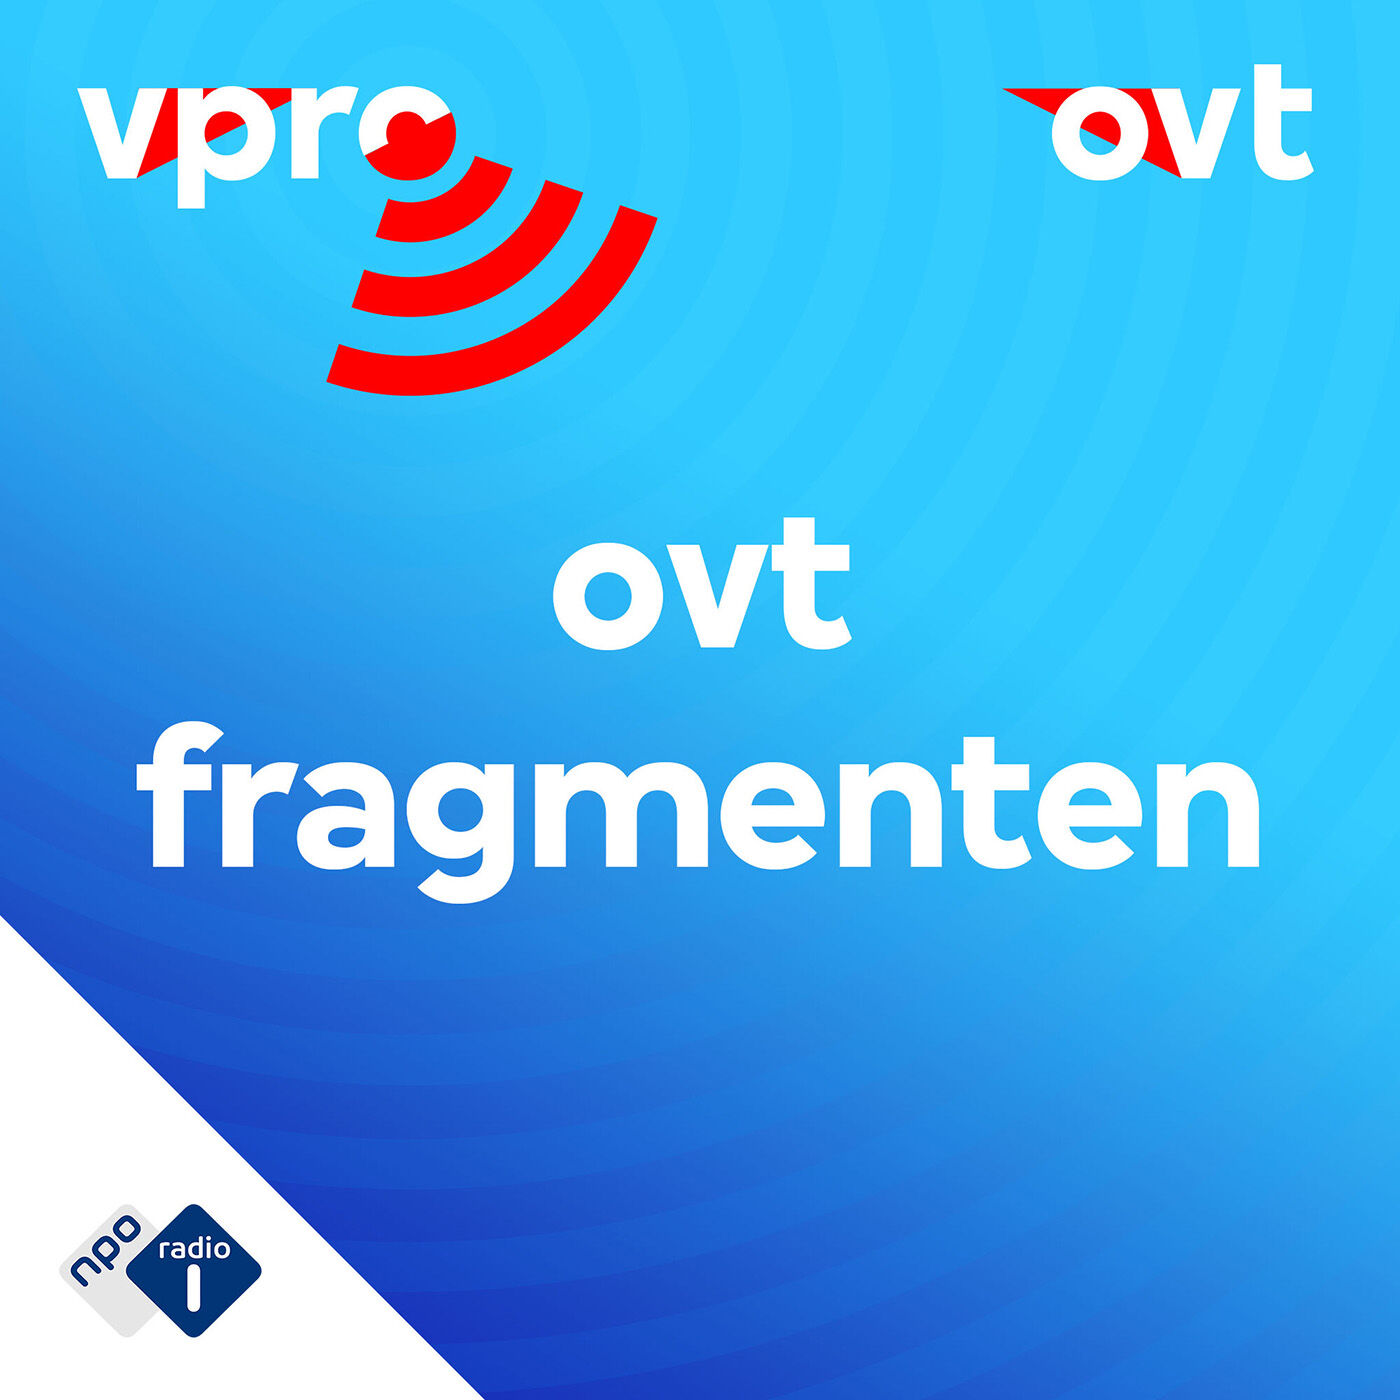 OVT Fragmenten podcast podcast show image